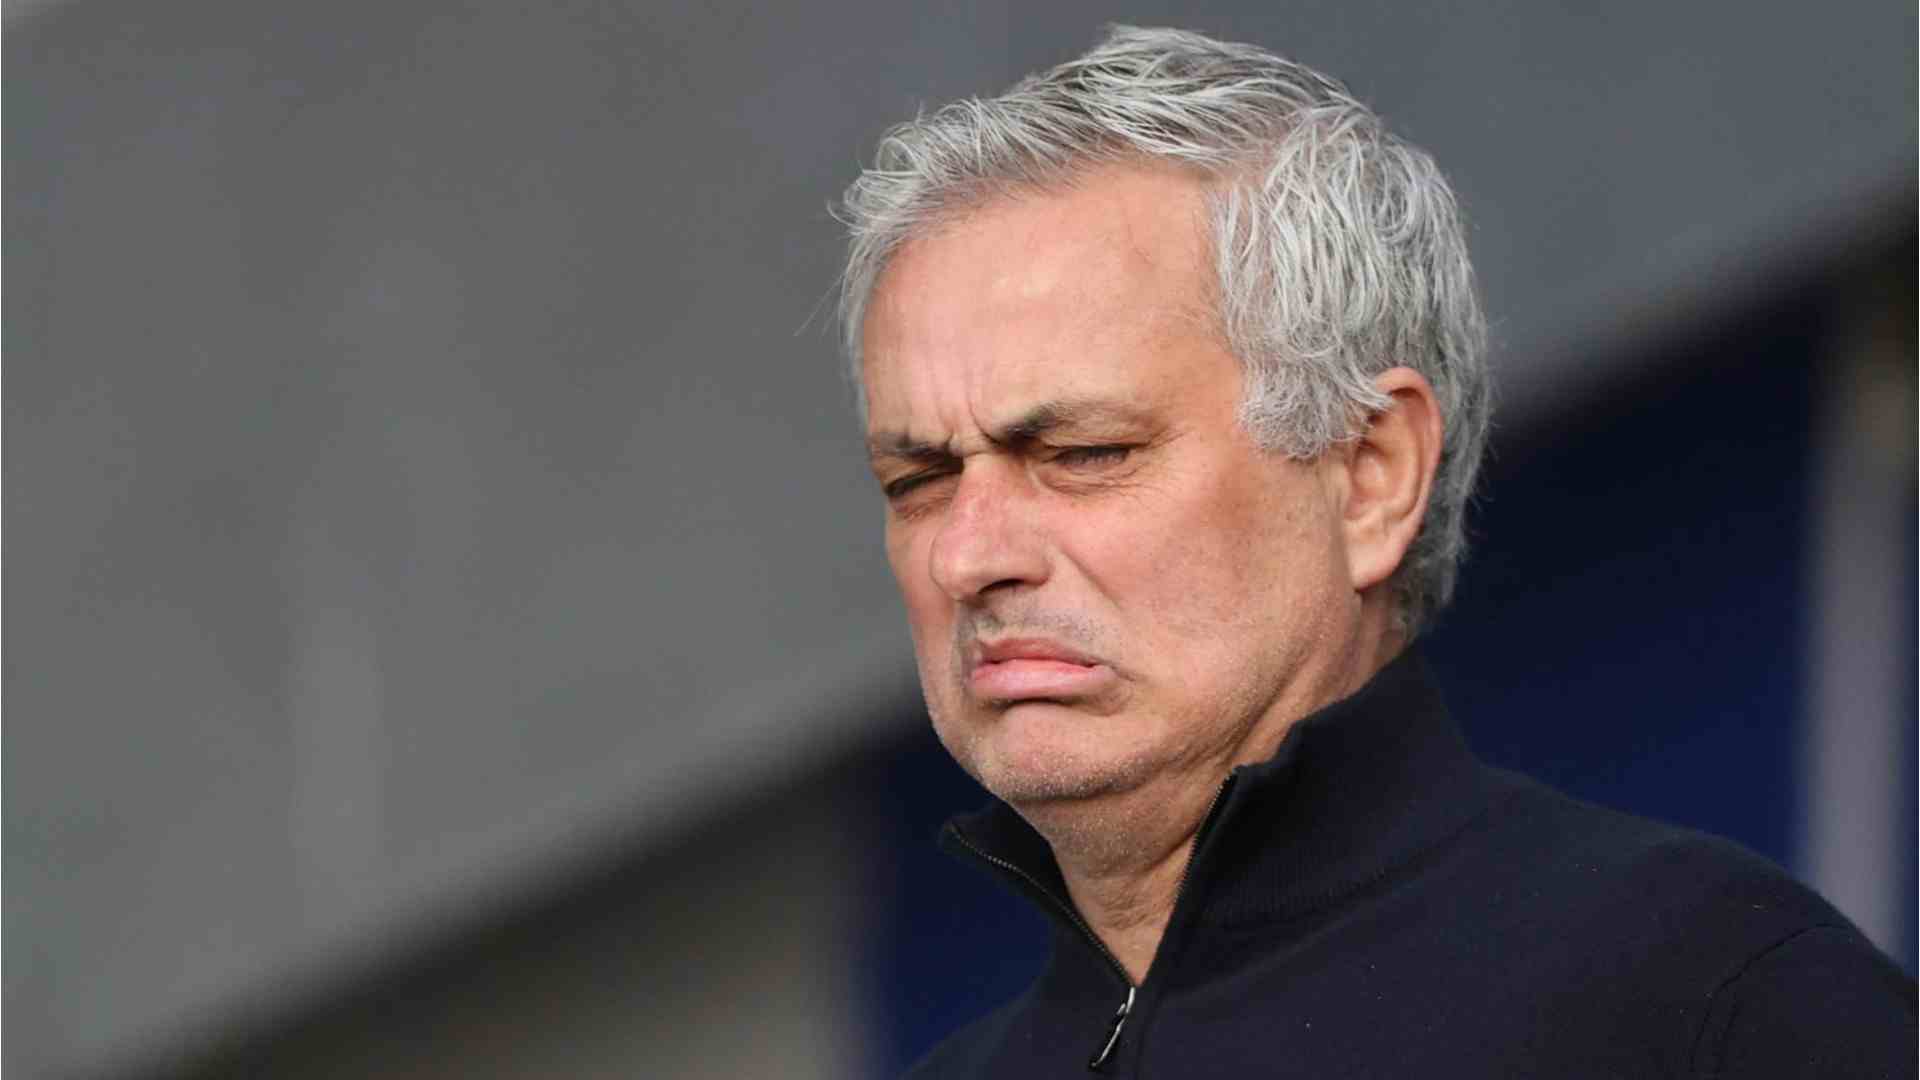 "In Italia mi sento aggredito", duro sfogo di Mourinho